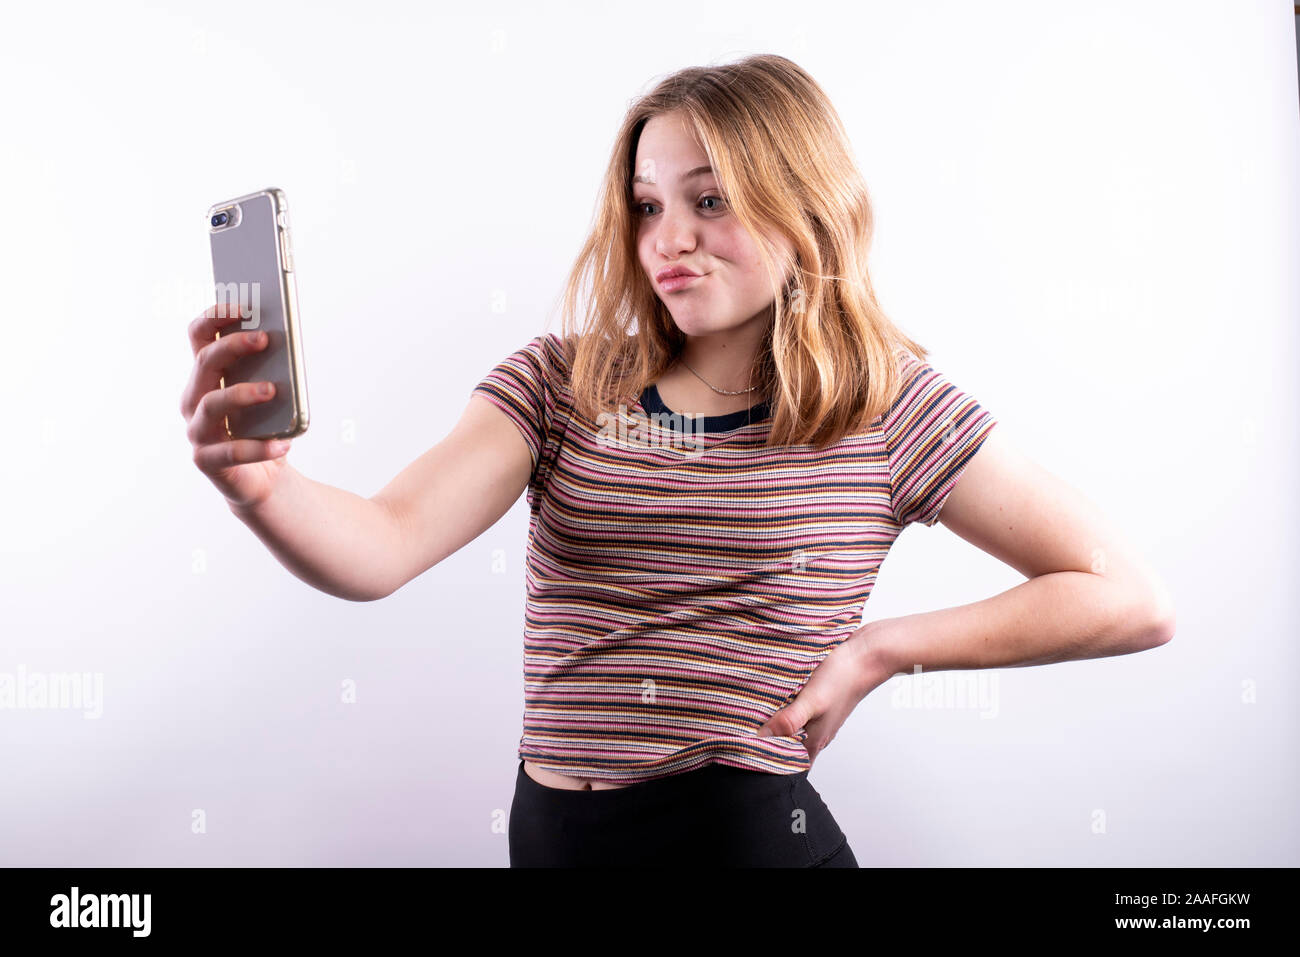 Caucasian ragazza adolescente che indossa un rigato orizzontale T-shirt con un espressione divertente tenendo un selfie con uno smartphone contro uno sfondo bianco Foto Stock